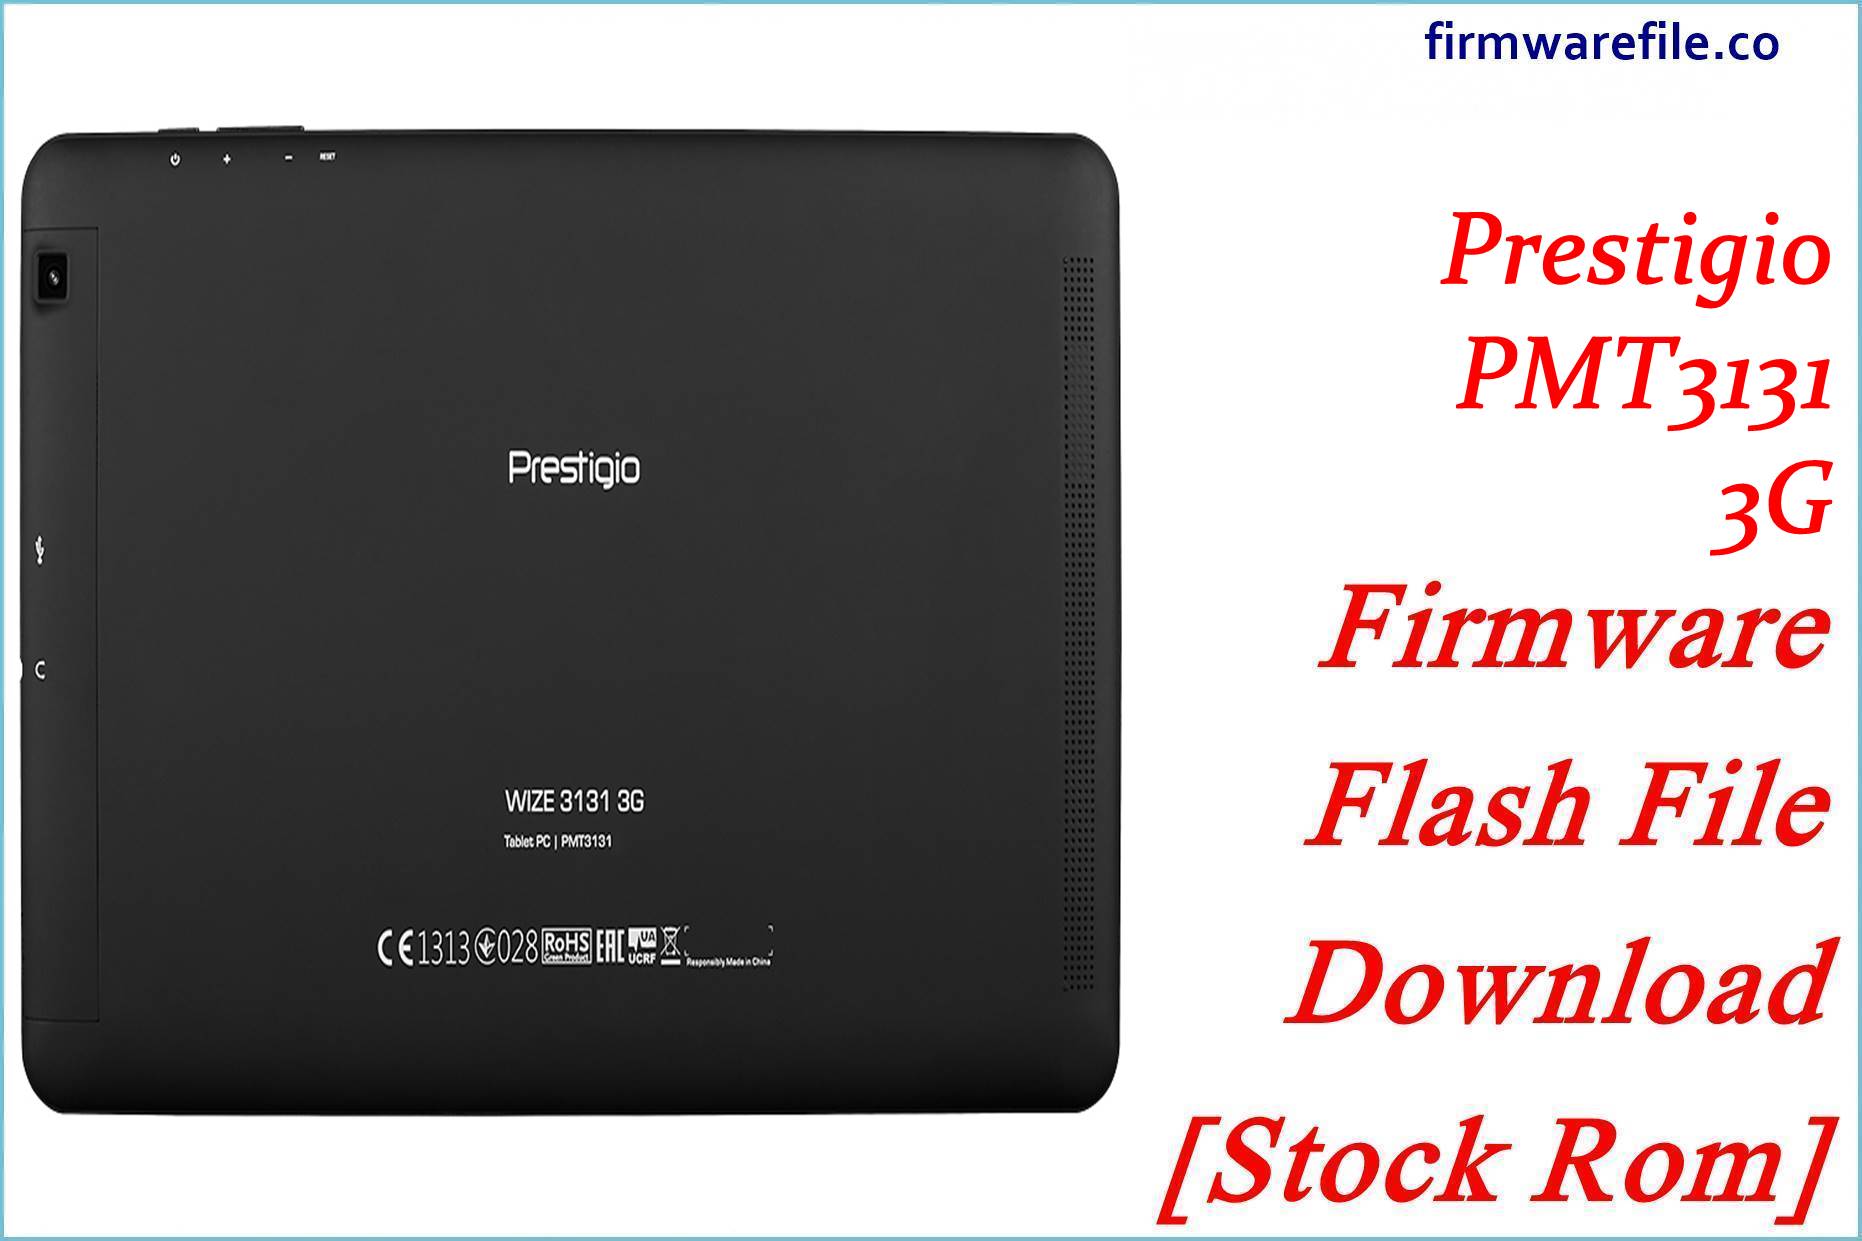 Prestigio PMT3131 3G Firmware Flash File Download [Stock Rom]